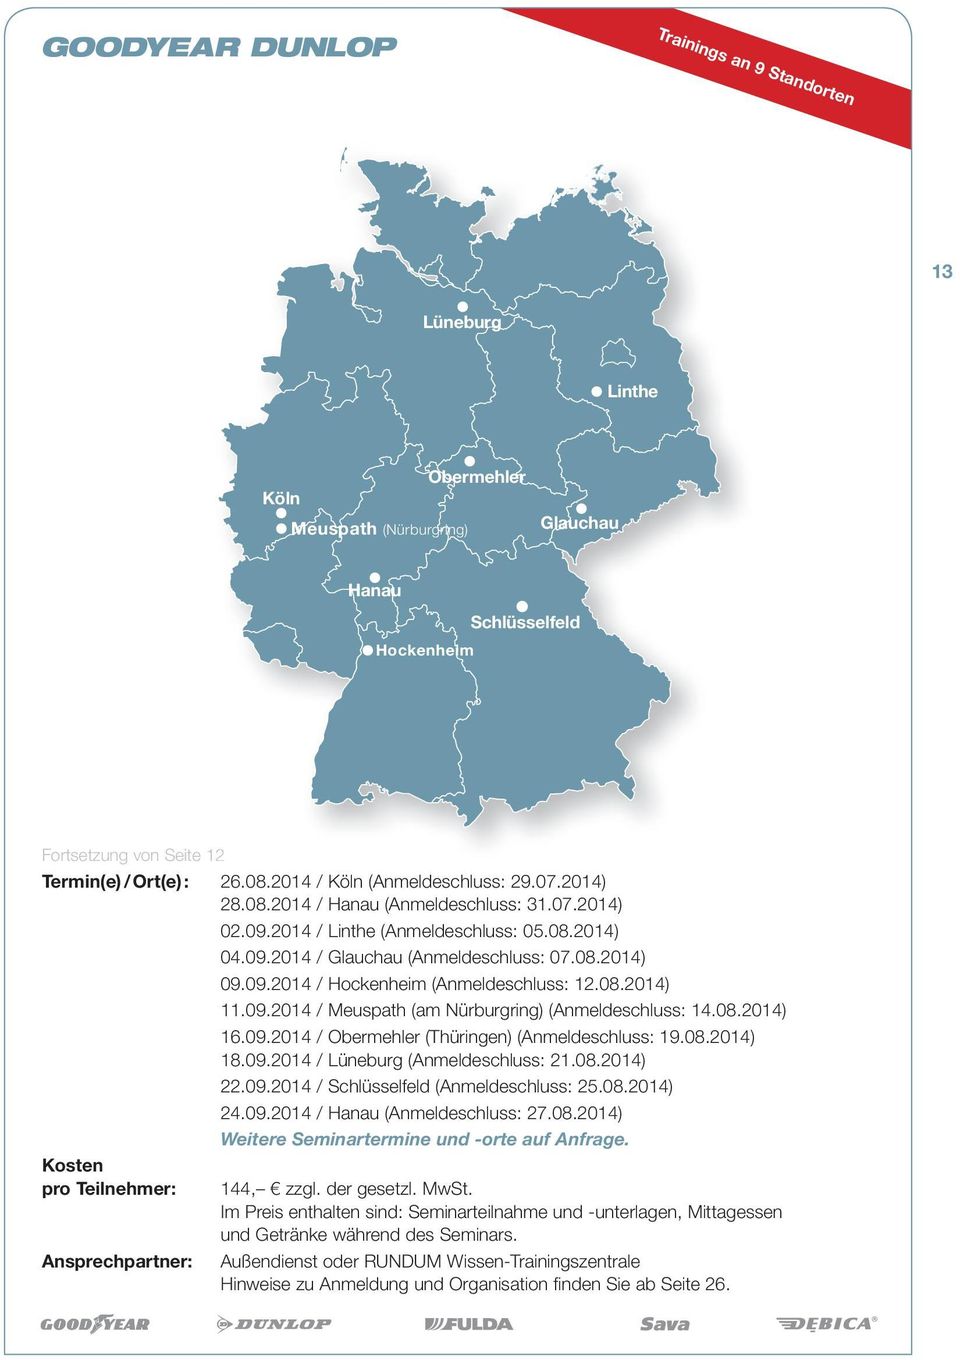 08.2014) 11.09.2014 / Meuspath (am Nürburgring) (Anmeldeschluss: 14.08.2014) 16.09.2014 / Obermehler (Thüringen) (Anmeldeschluss: 19.08.2014) 18.09.2014 / Lüneburg (Anmeldeschluss: 21.08.2014) 22.09.2014 / Schlüsselfeld (Anmeldeschluss: 25.